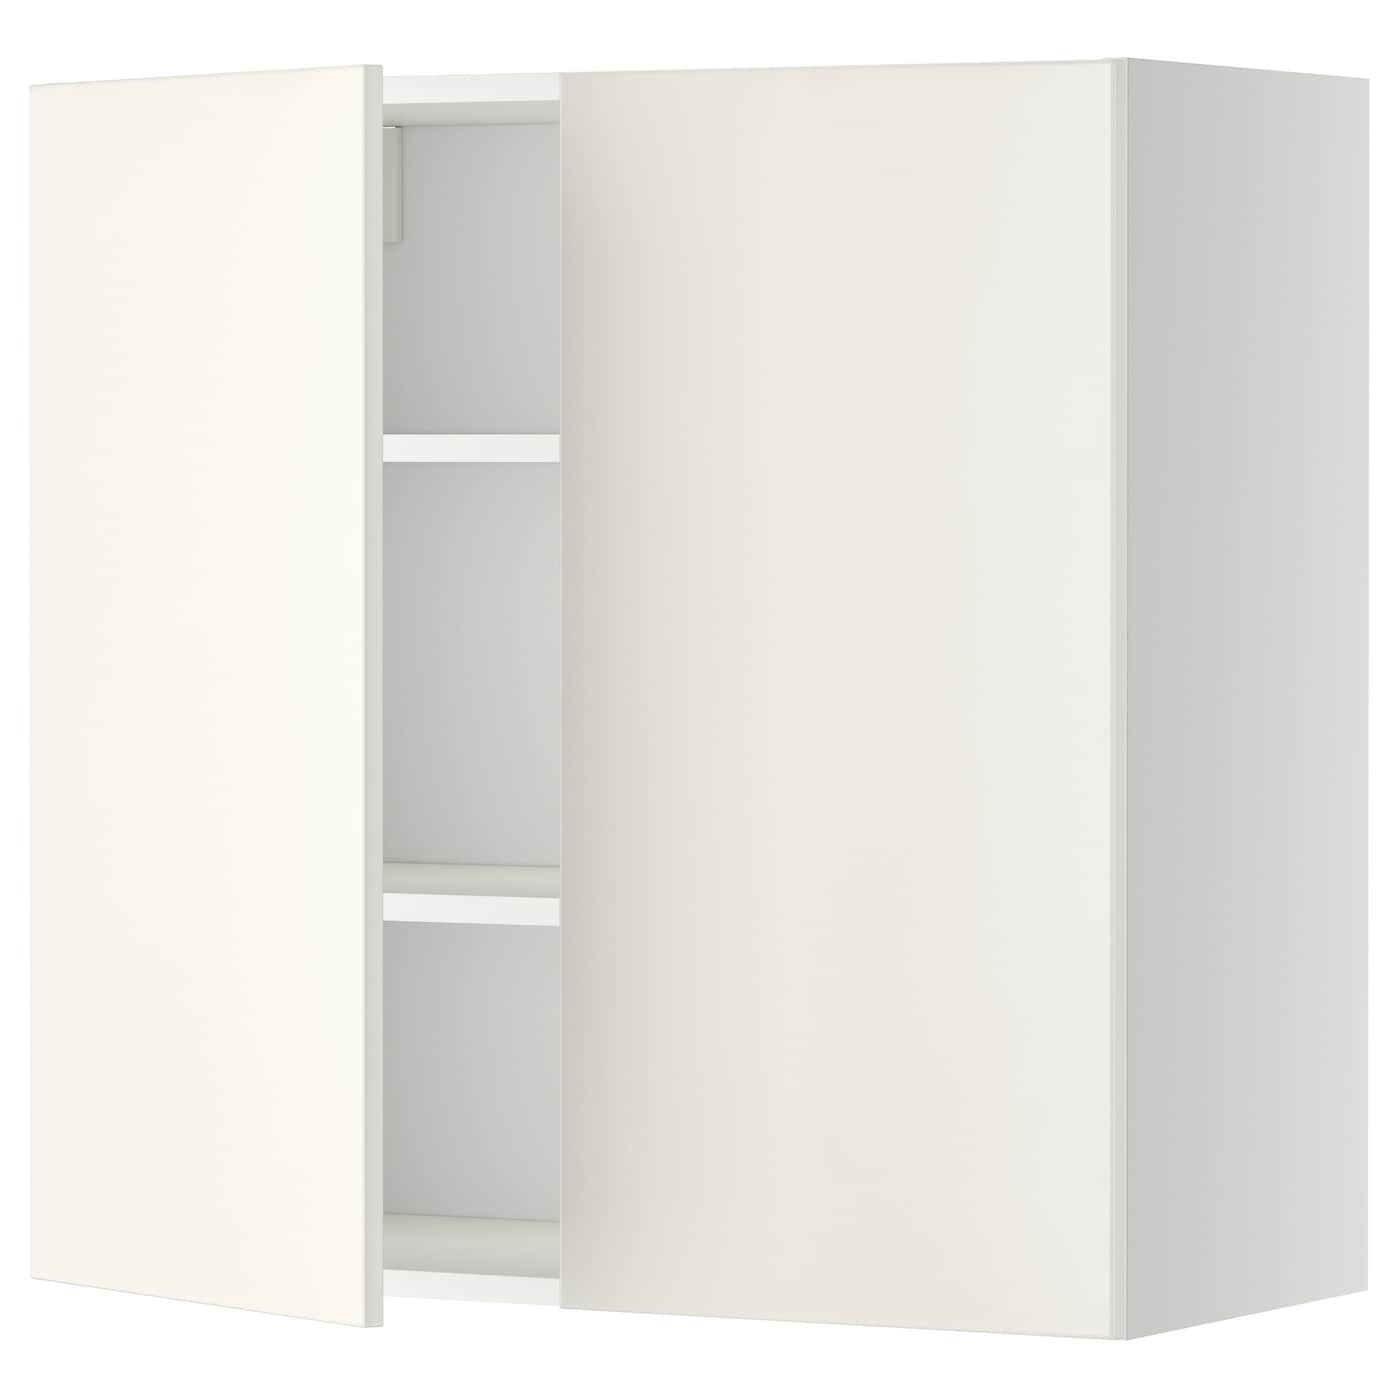 Навесной шкаф с полкой - METOD IKEA/ МЕТОД ИКЕА, 60х60 см, белый/светло-бежевый